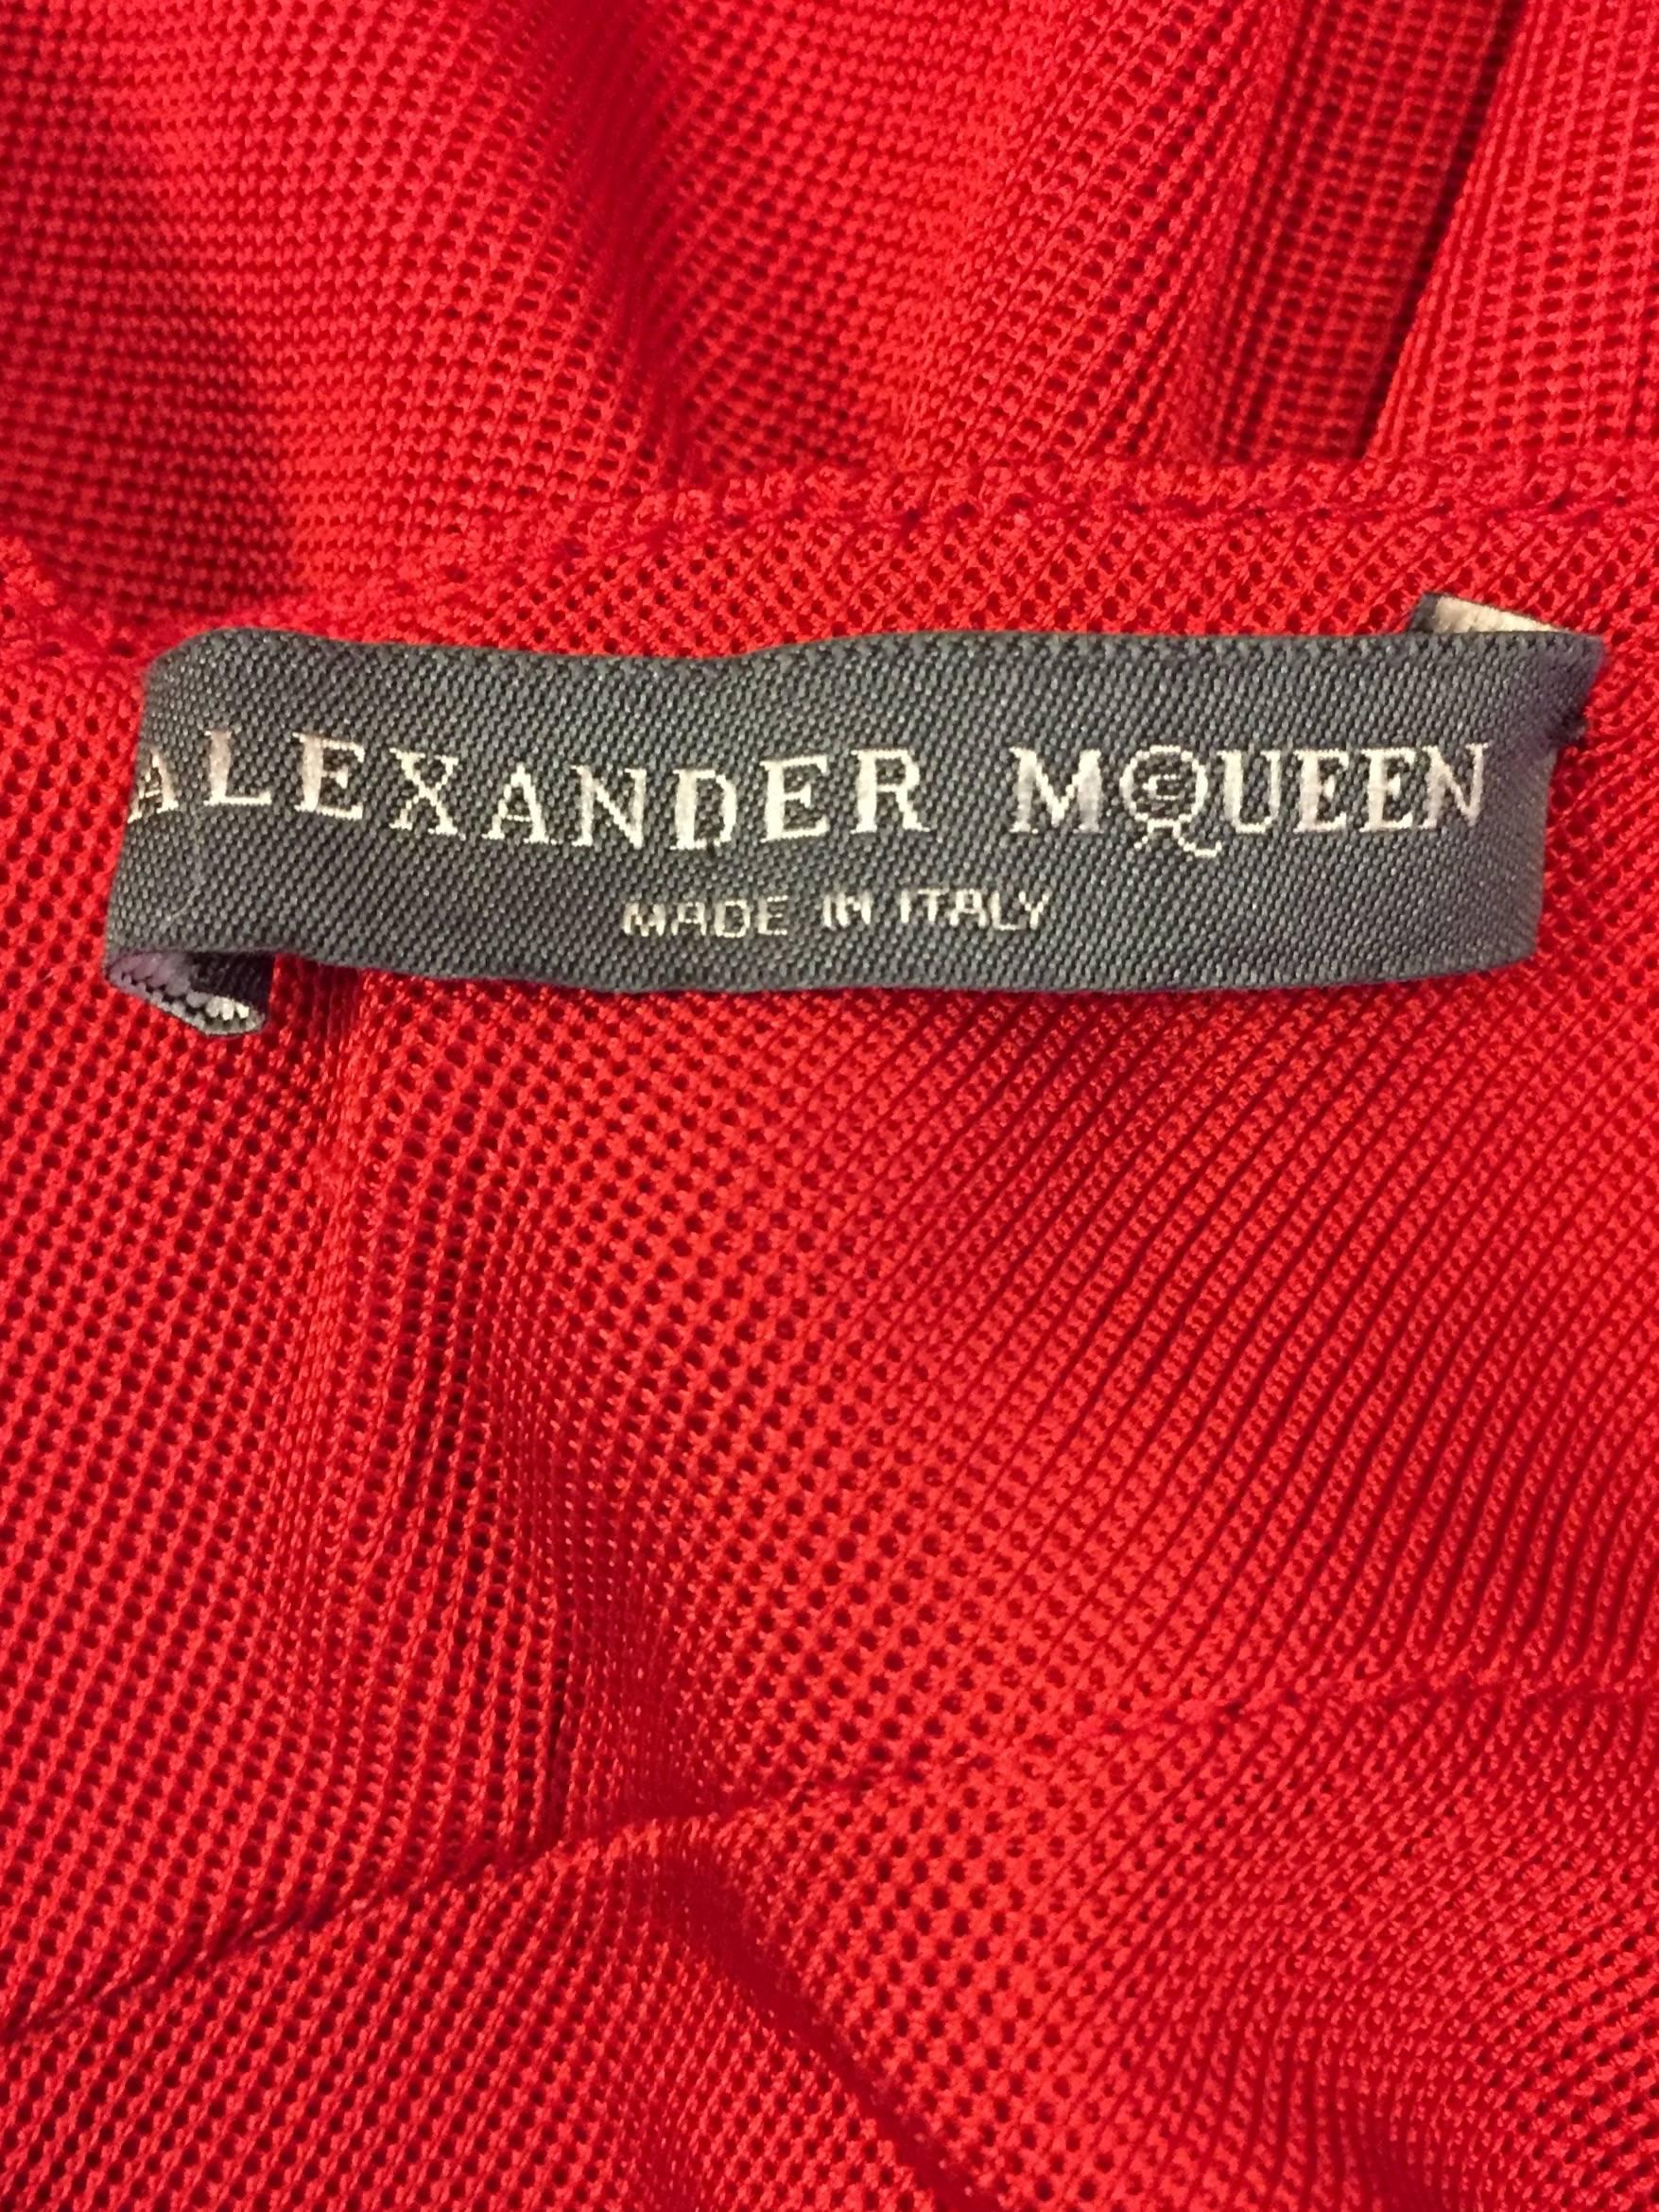 Alluring Alexander McQueen Red 